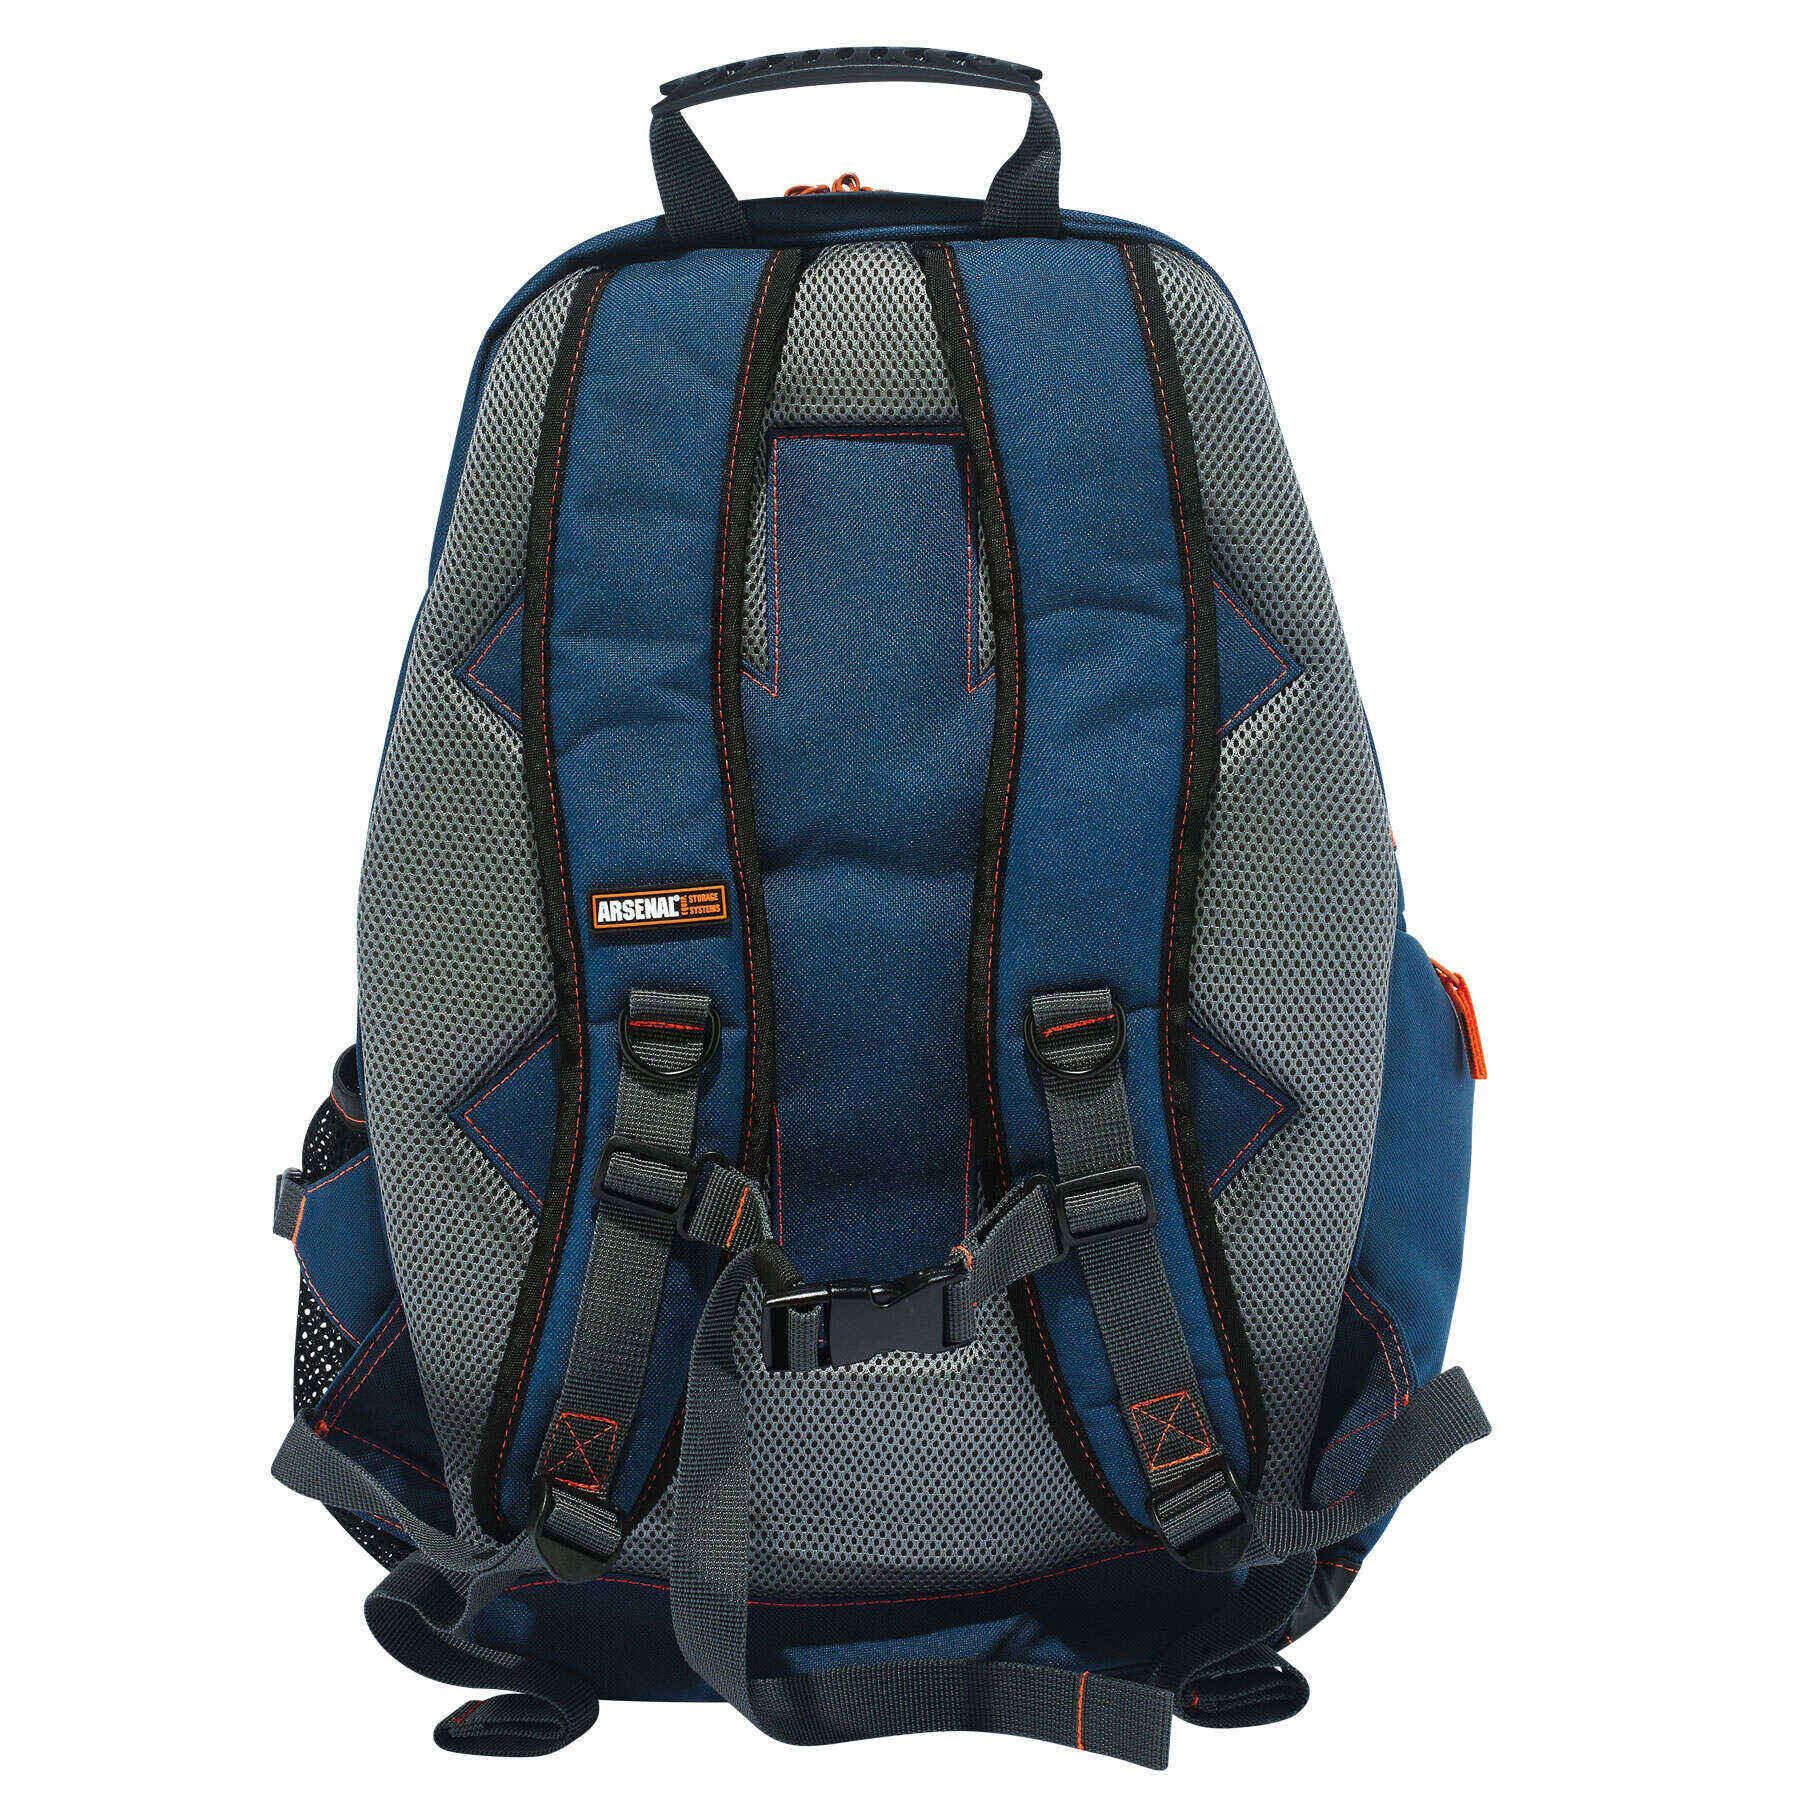 Ergodyne Arsenal® 5244 Responder Backpack, Blue - image 4 of 5